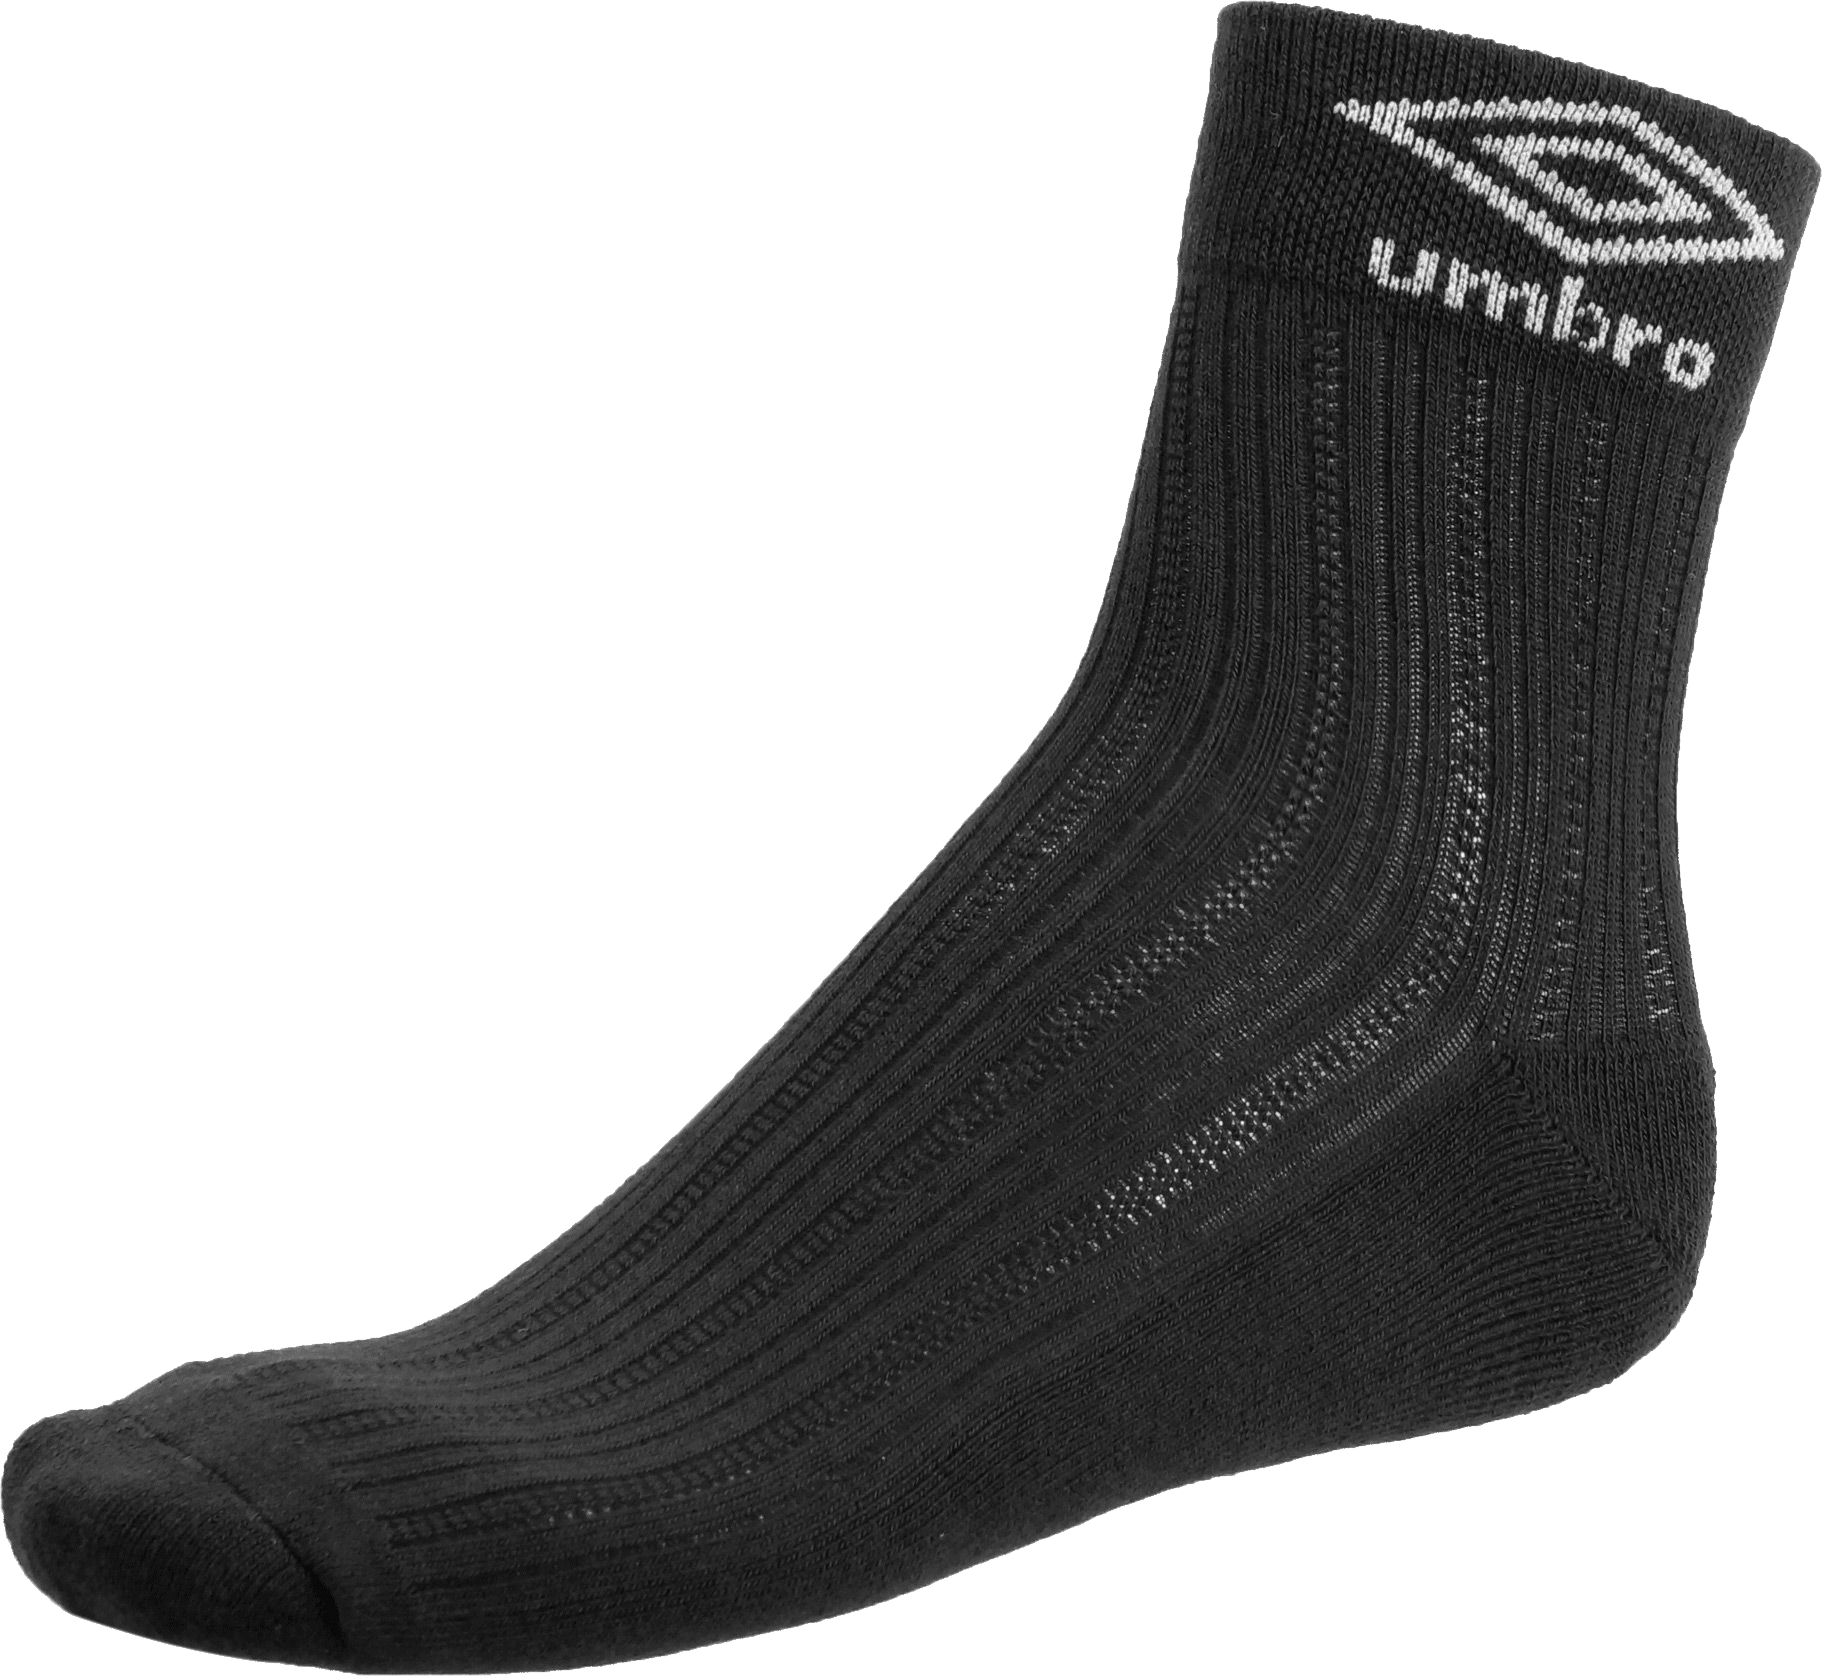 Socks PNG - 14662